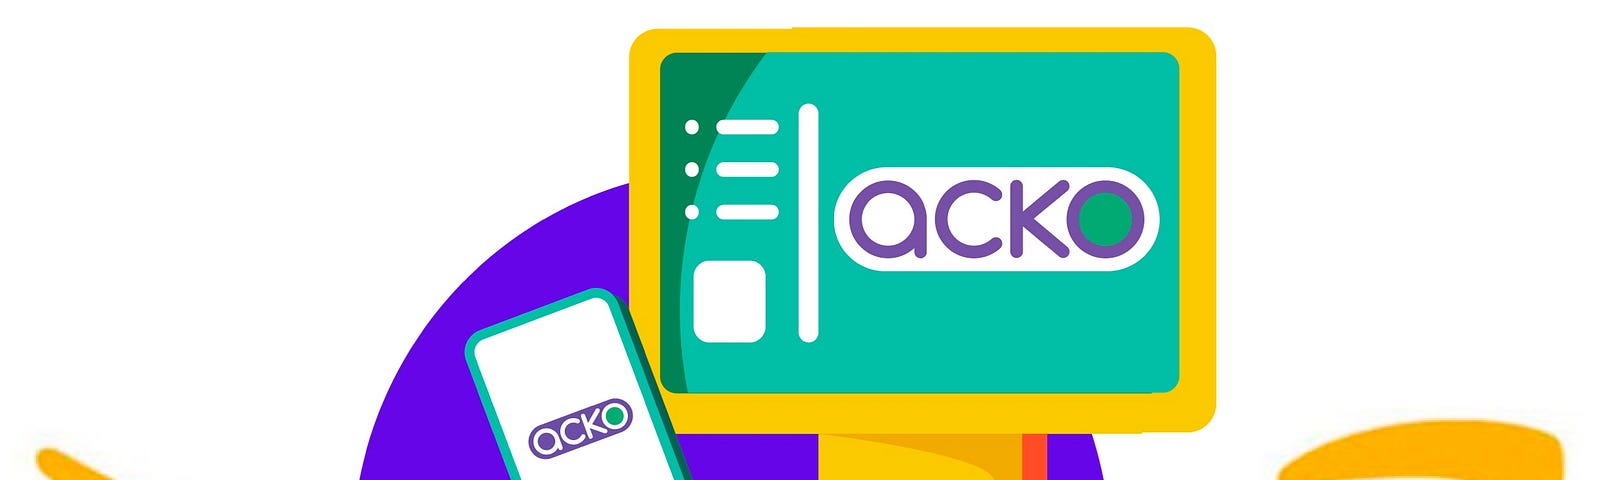 Acko logo and Amazon Smile